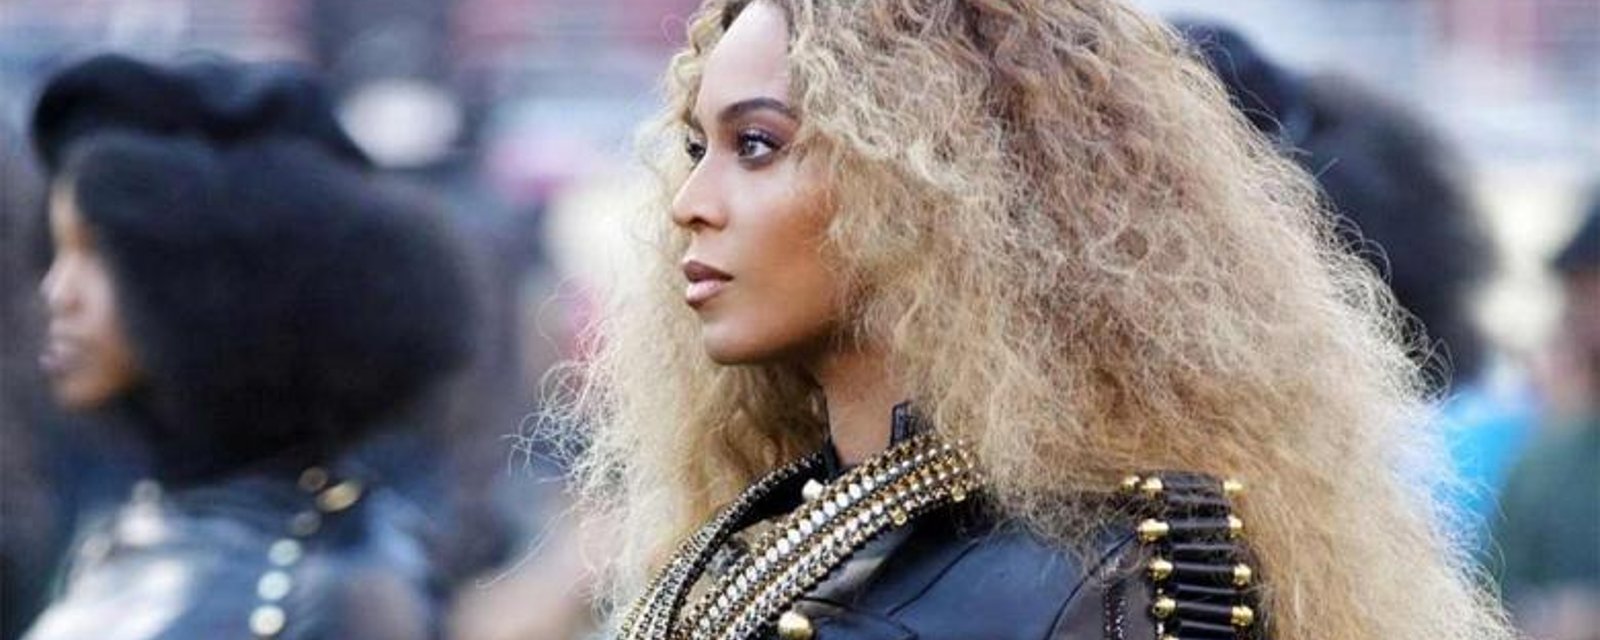 [PHOTOS] La fille de Beyonce est absolument sublime!